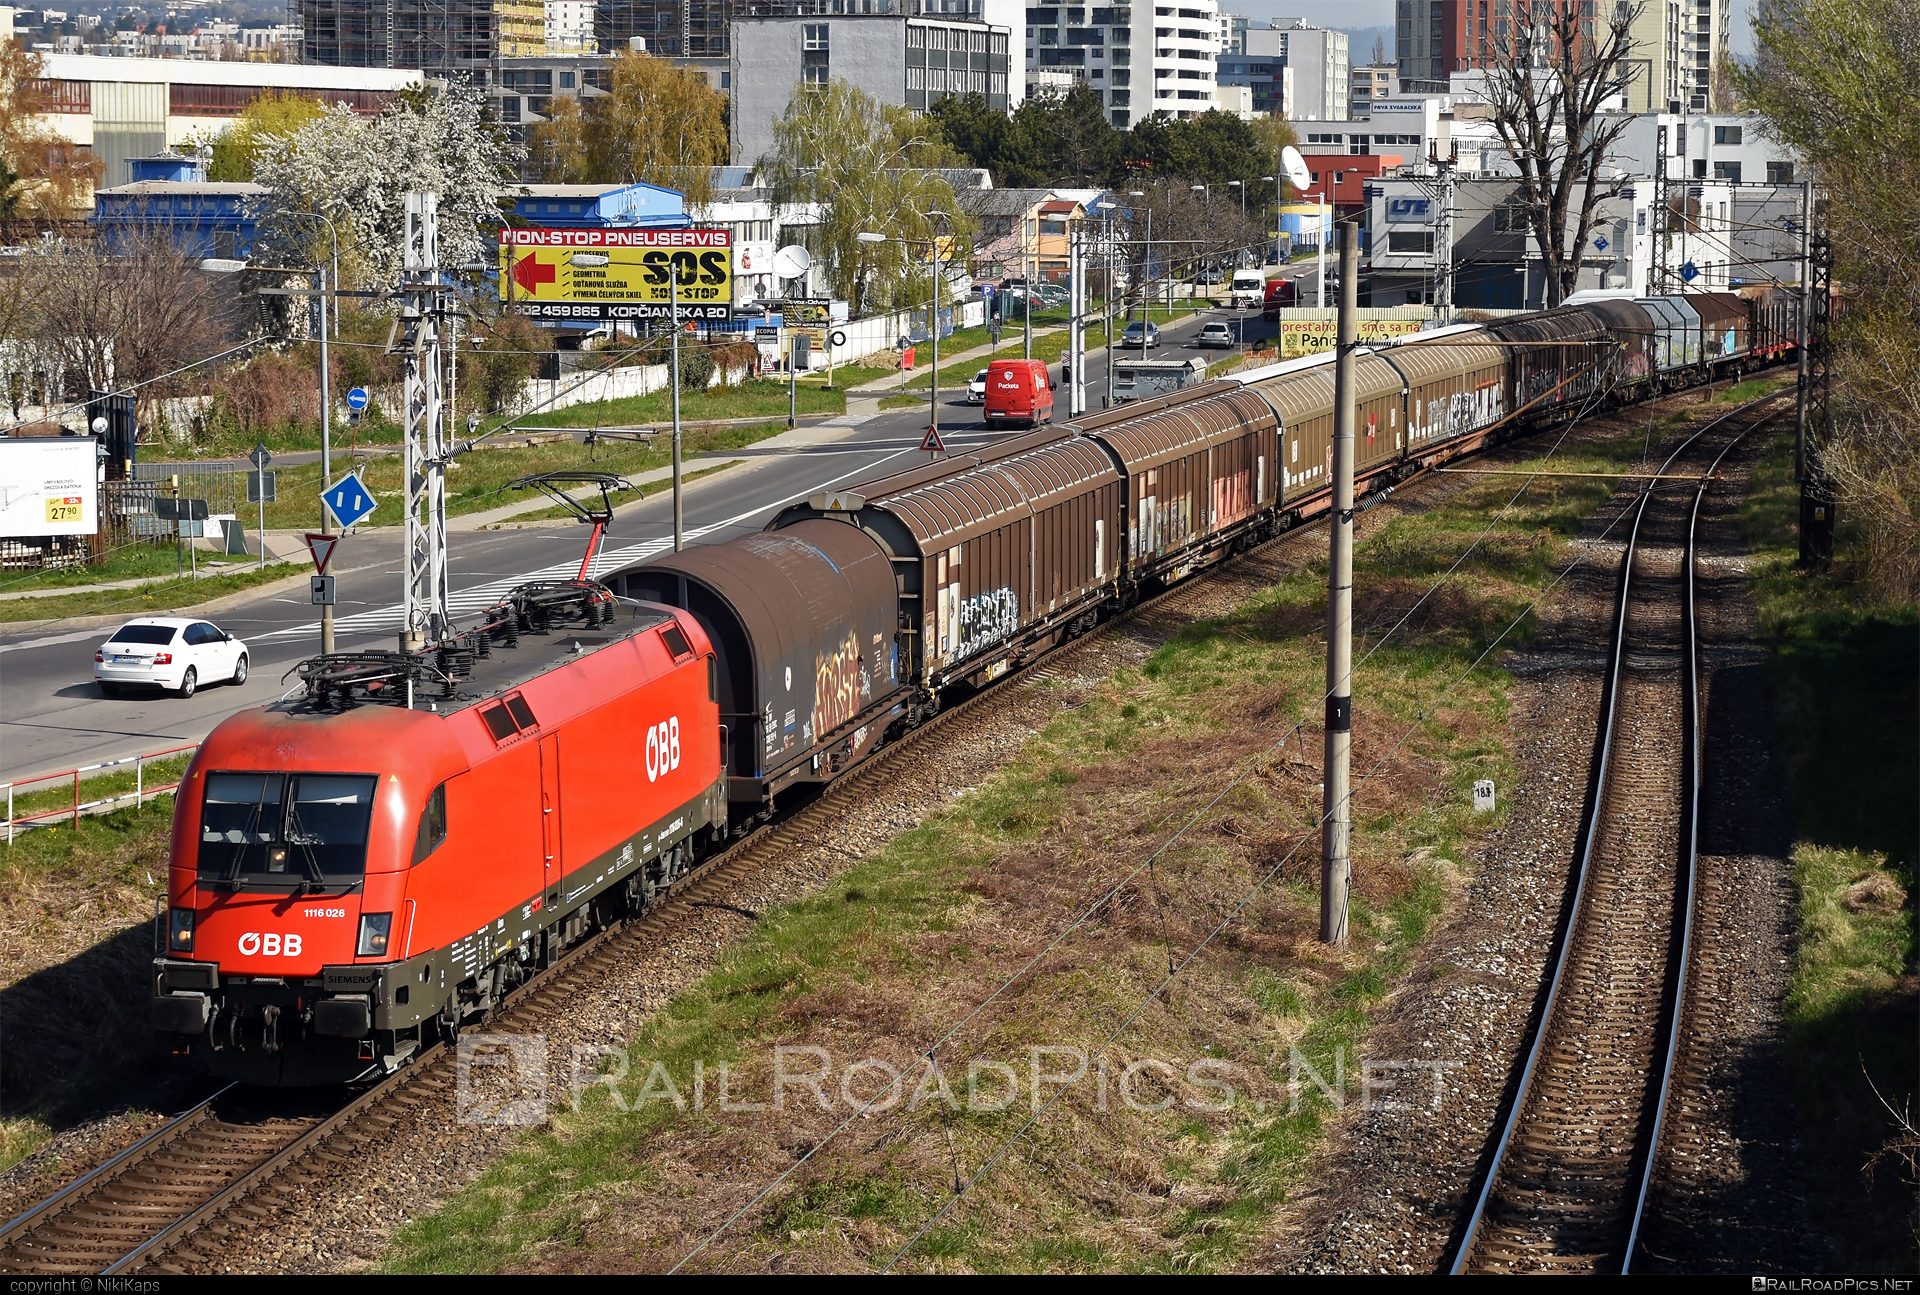 Siemens ES 64 U2 - 1116 026 operated by Rail Cargo Austria AG #es64 #es64u2 #eurosprinter #graffiti #mixofcargo #obb #osterreichischebundesbahnen #rcw #siemens #siemensEs64 #siemensEs64u2 #siemenstaurus #taurus #tauruslocomotive